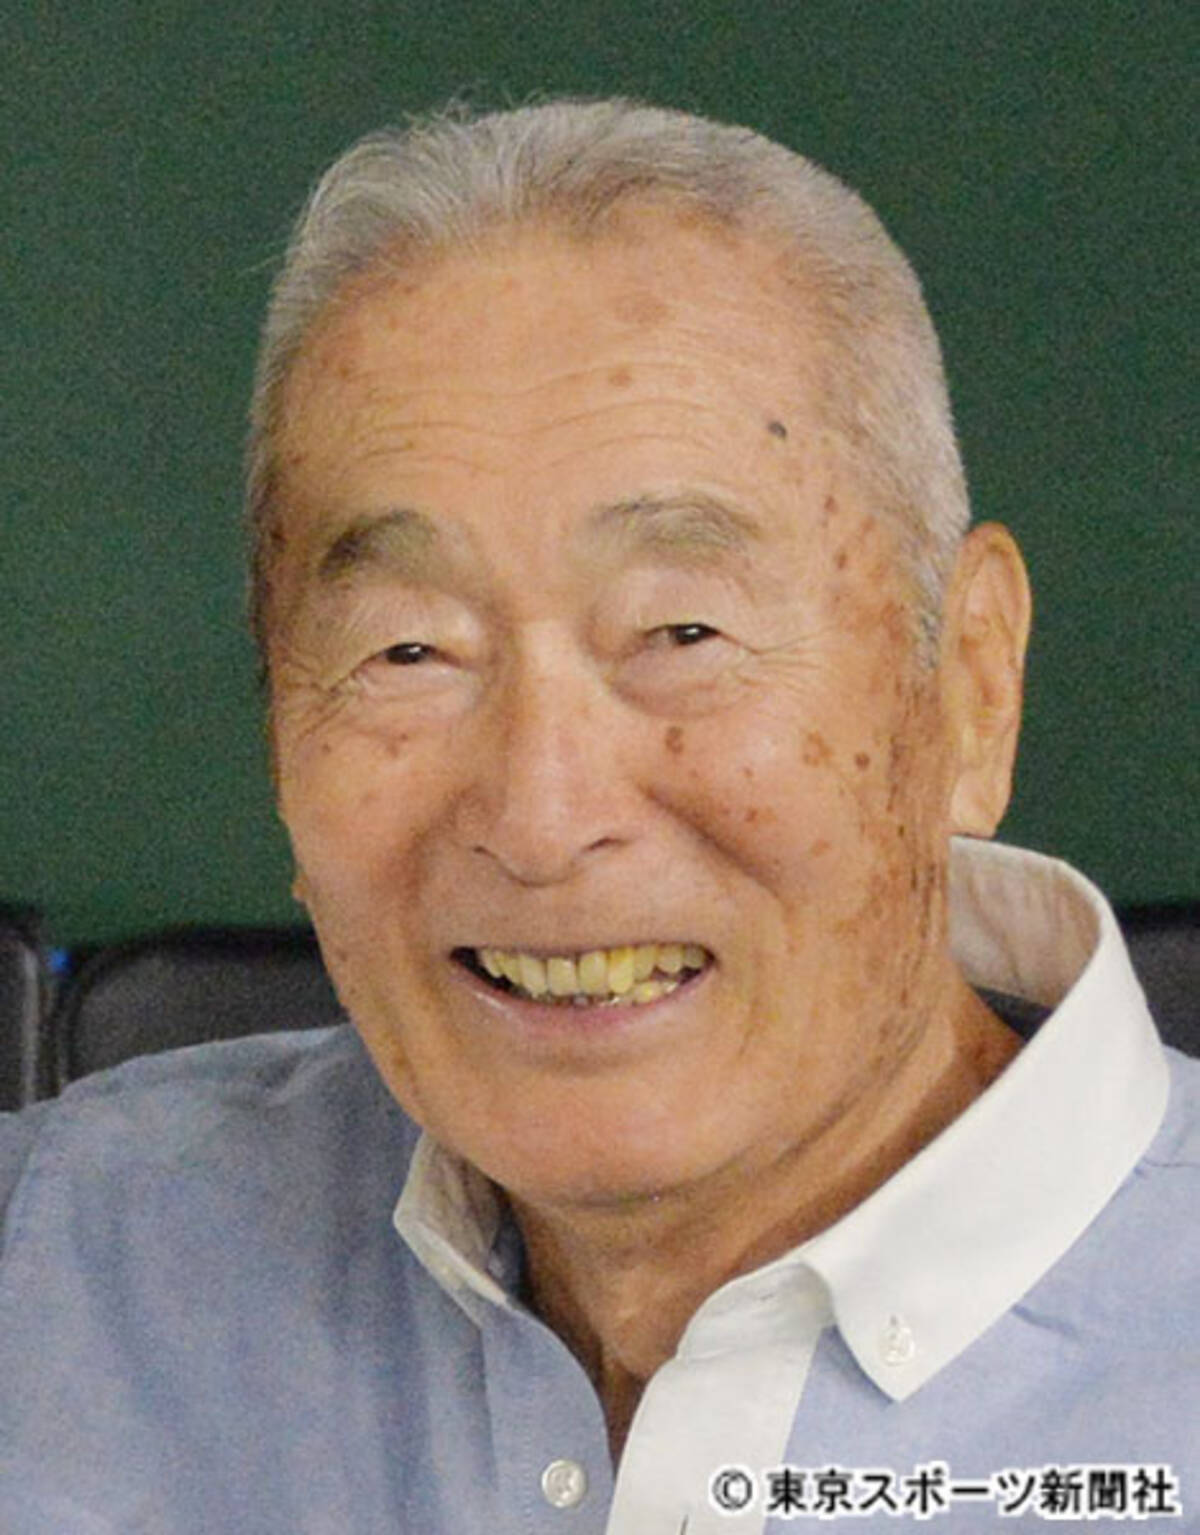 金田正一氏死去 86歳 史上最高の左腕と呼ばれ400勝 4490奪三振 エキサイトニュース